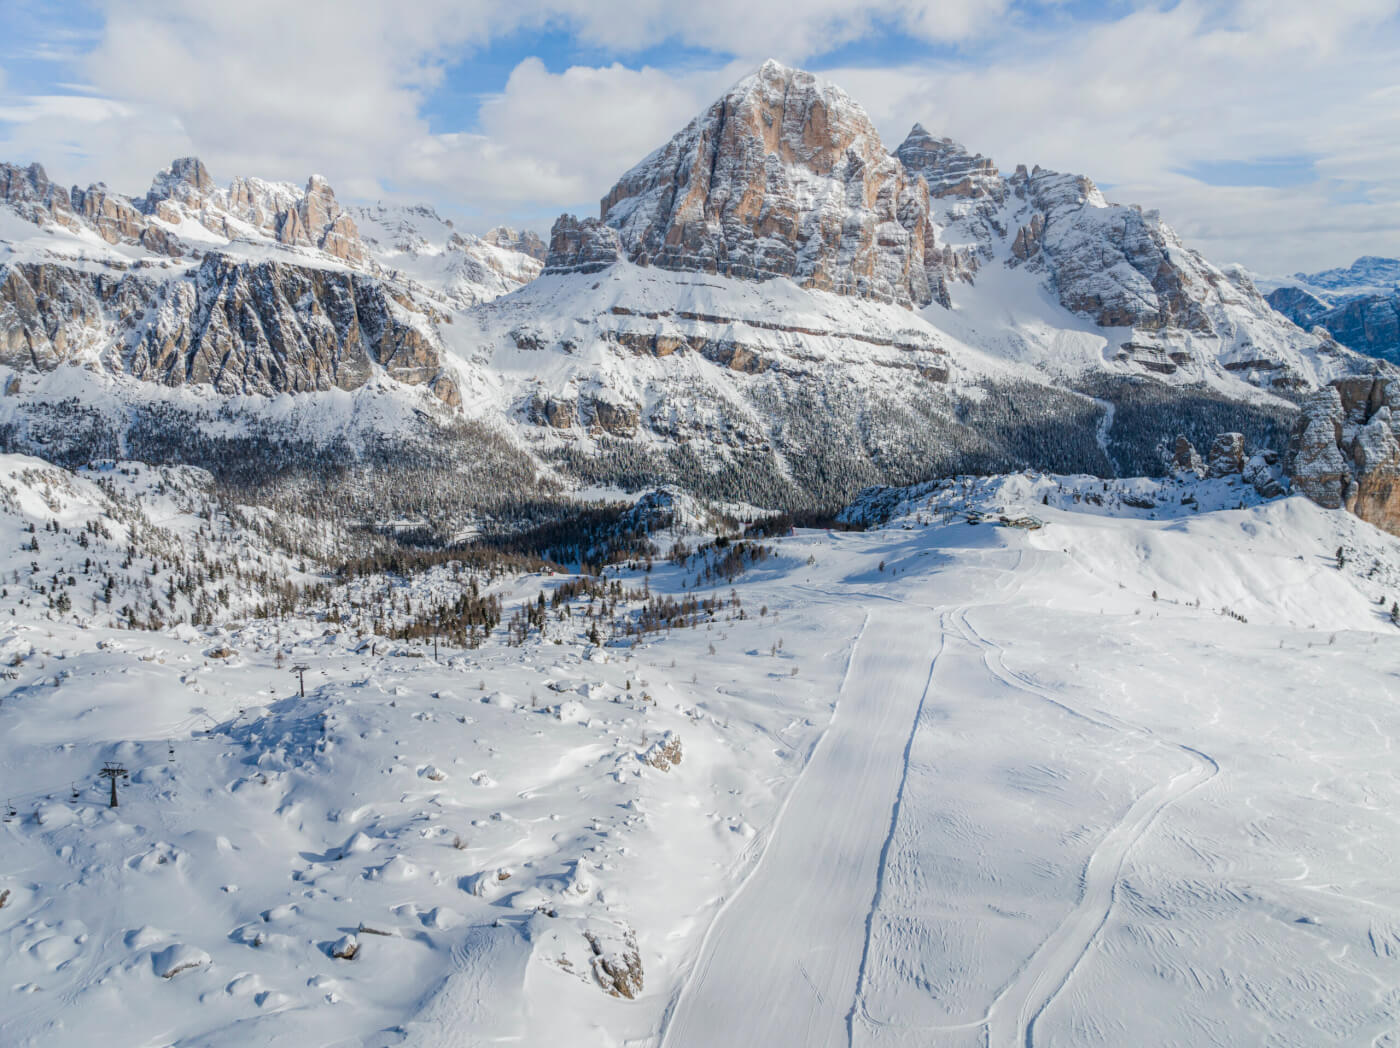 Tofana Peak at Dolomiti, a perfect selfie spot.